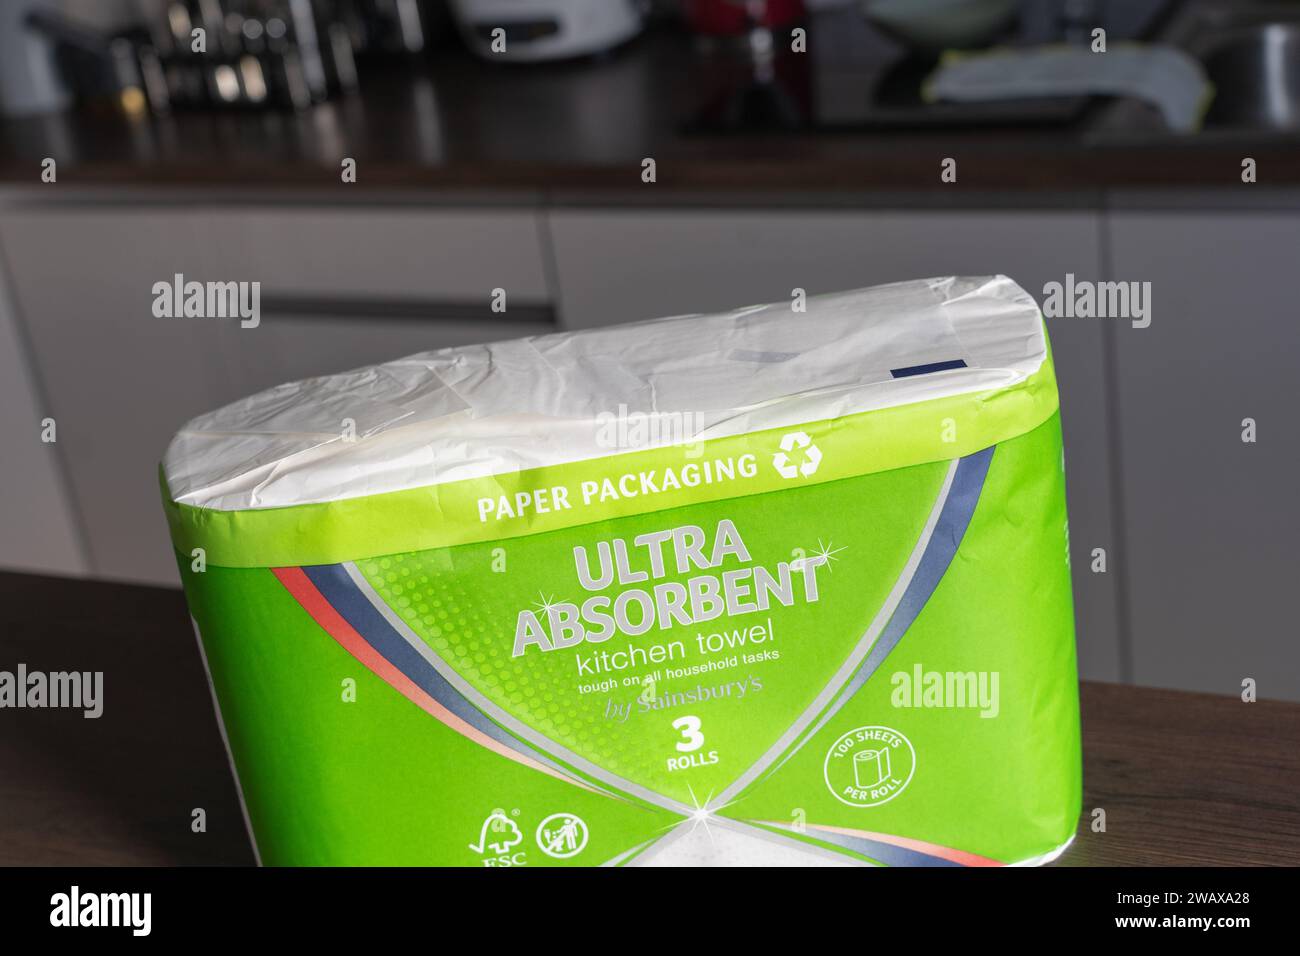 Küchenhandtuchpaket der Eigenmarke Sainsbury mit Papierverpackung und dem Recycling-Symbol, UK. Konzept: Abfallreduzierung, Reduzierung von Kunststoffabfällen Stockfoto